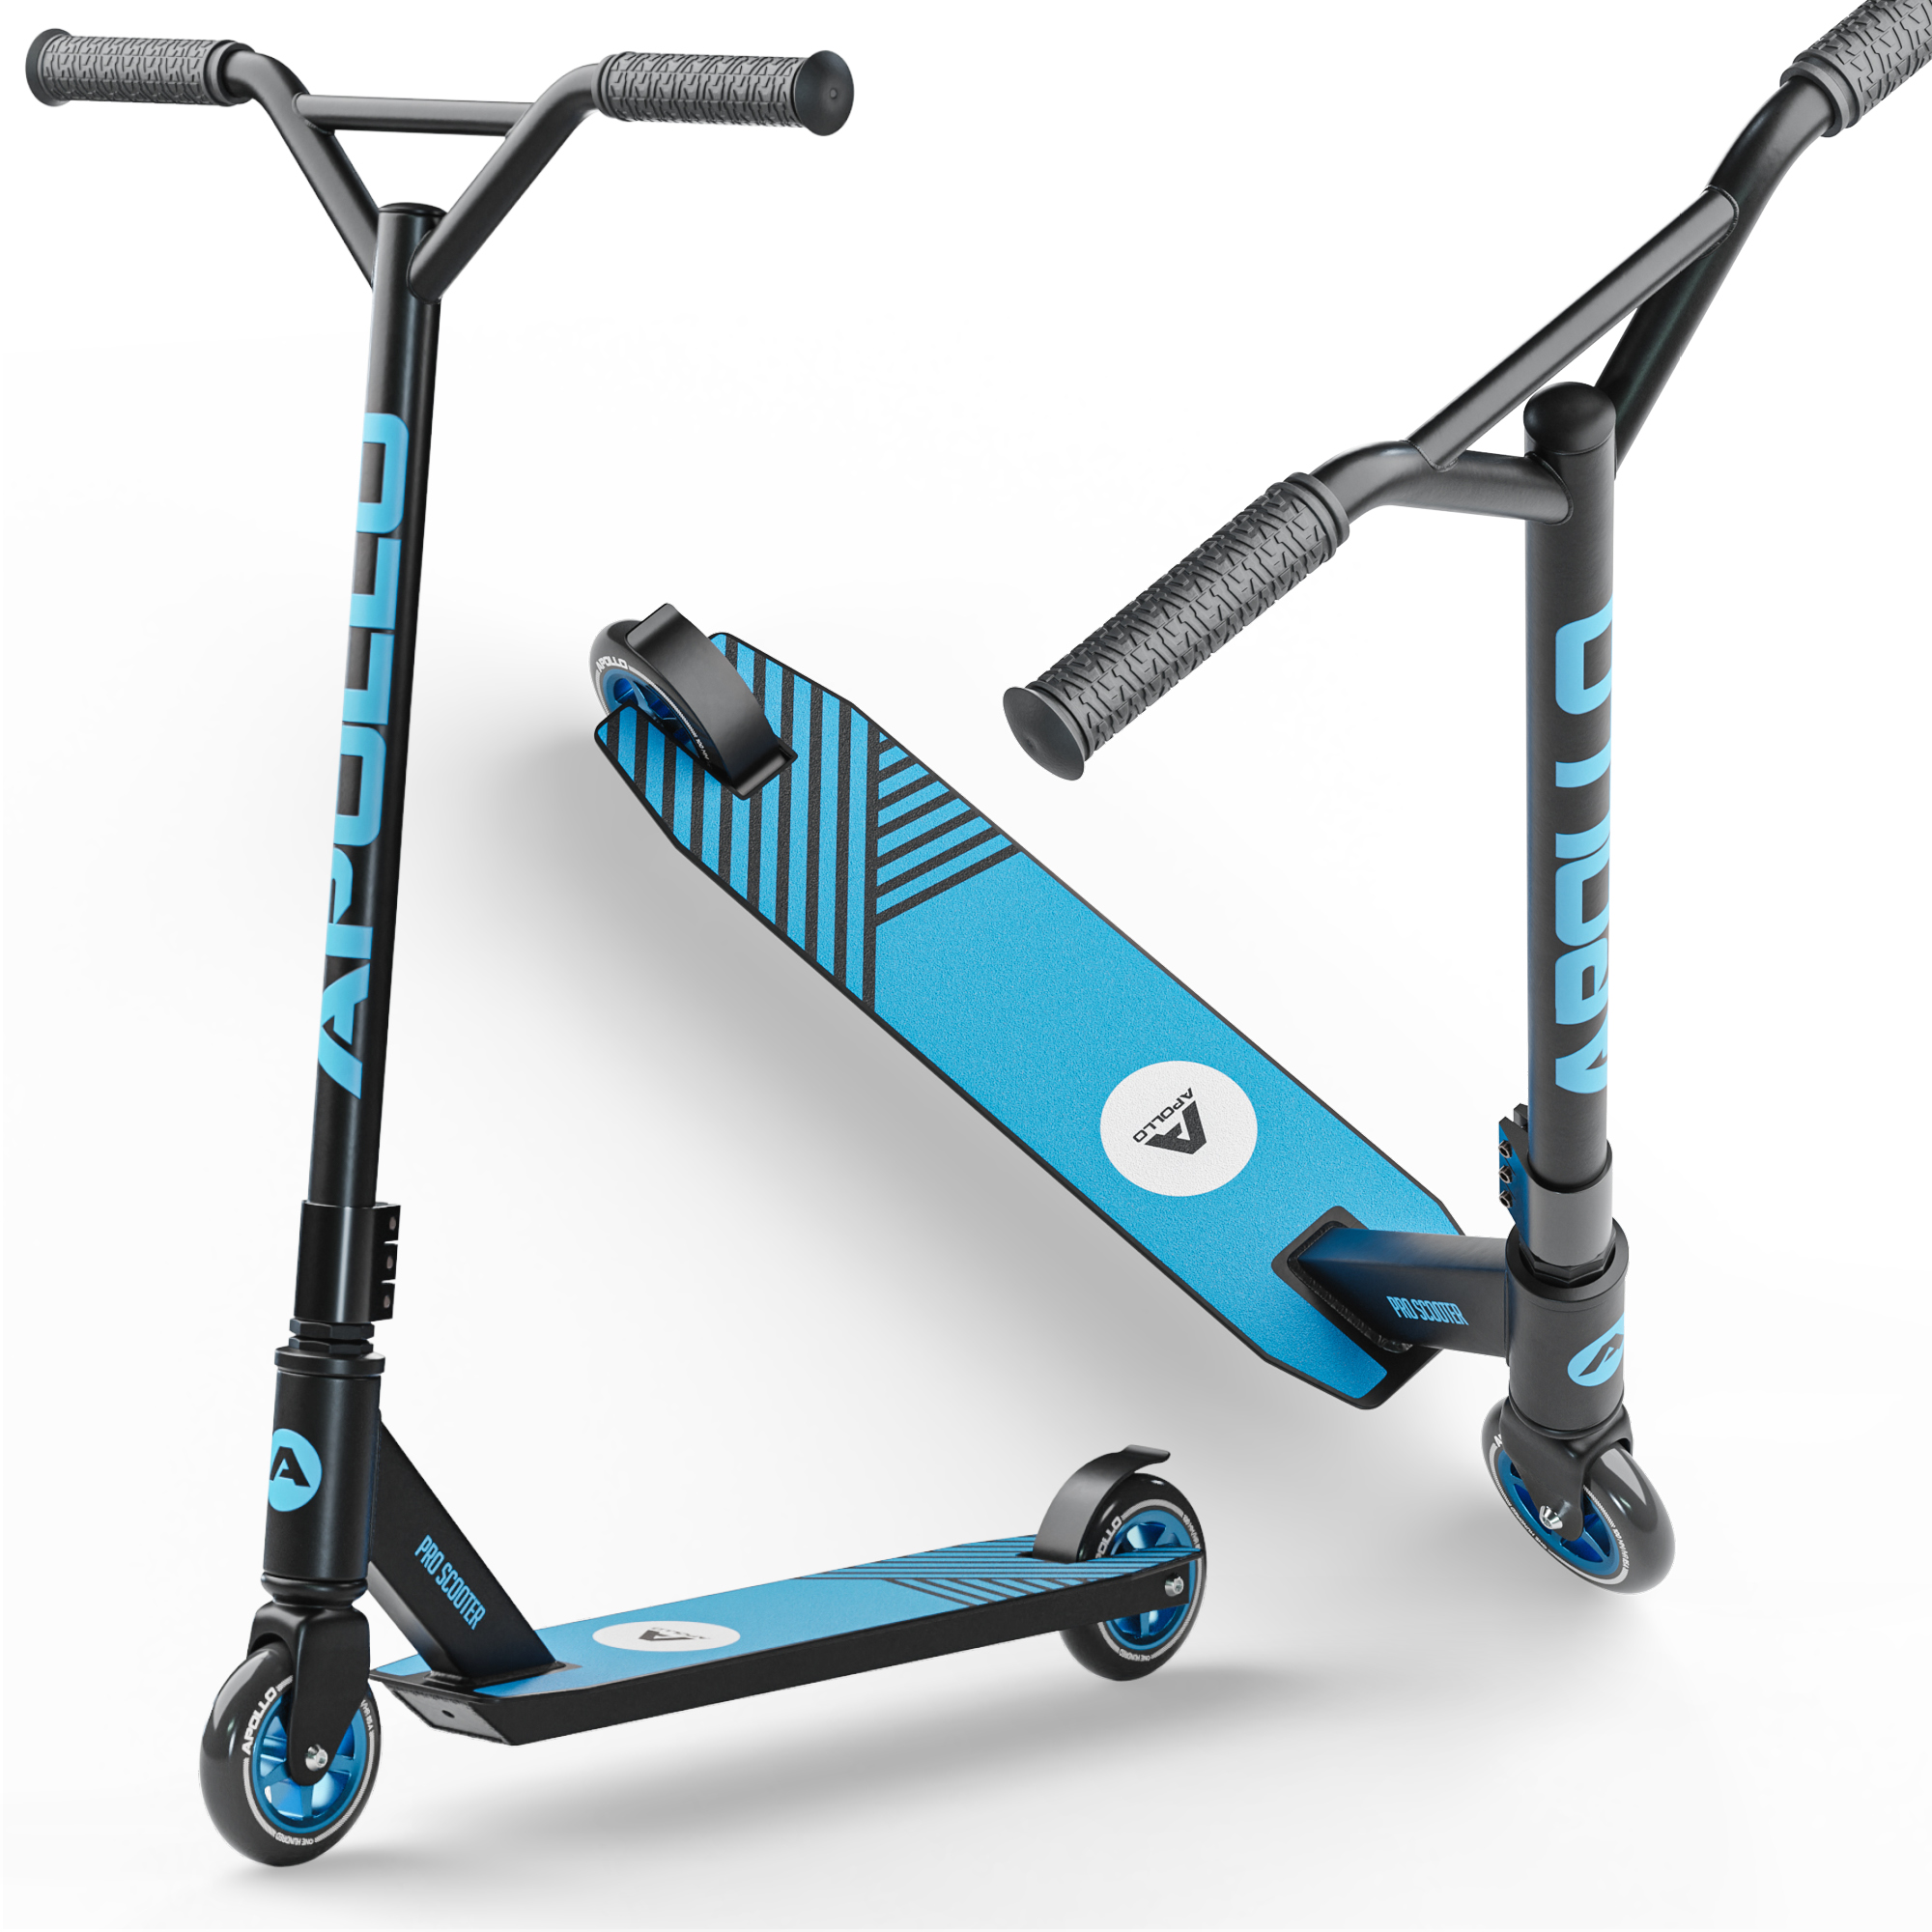 Stunt Scooter - Genius Pro 4.0 - Schwarz/Blau - von Apollo